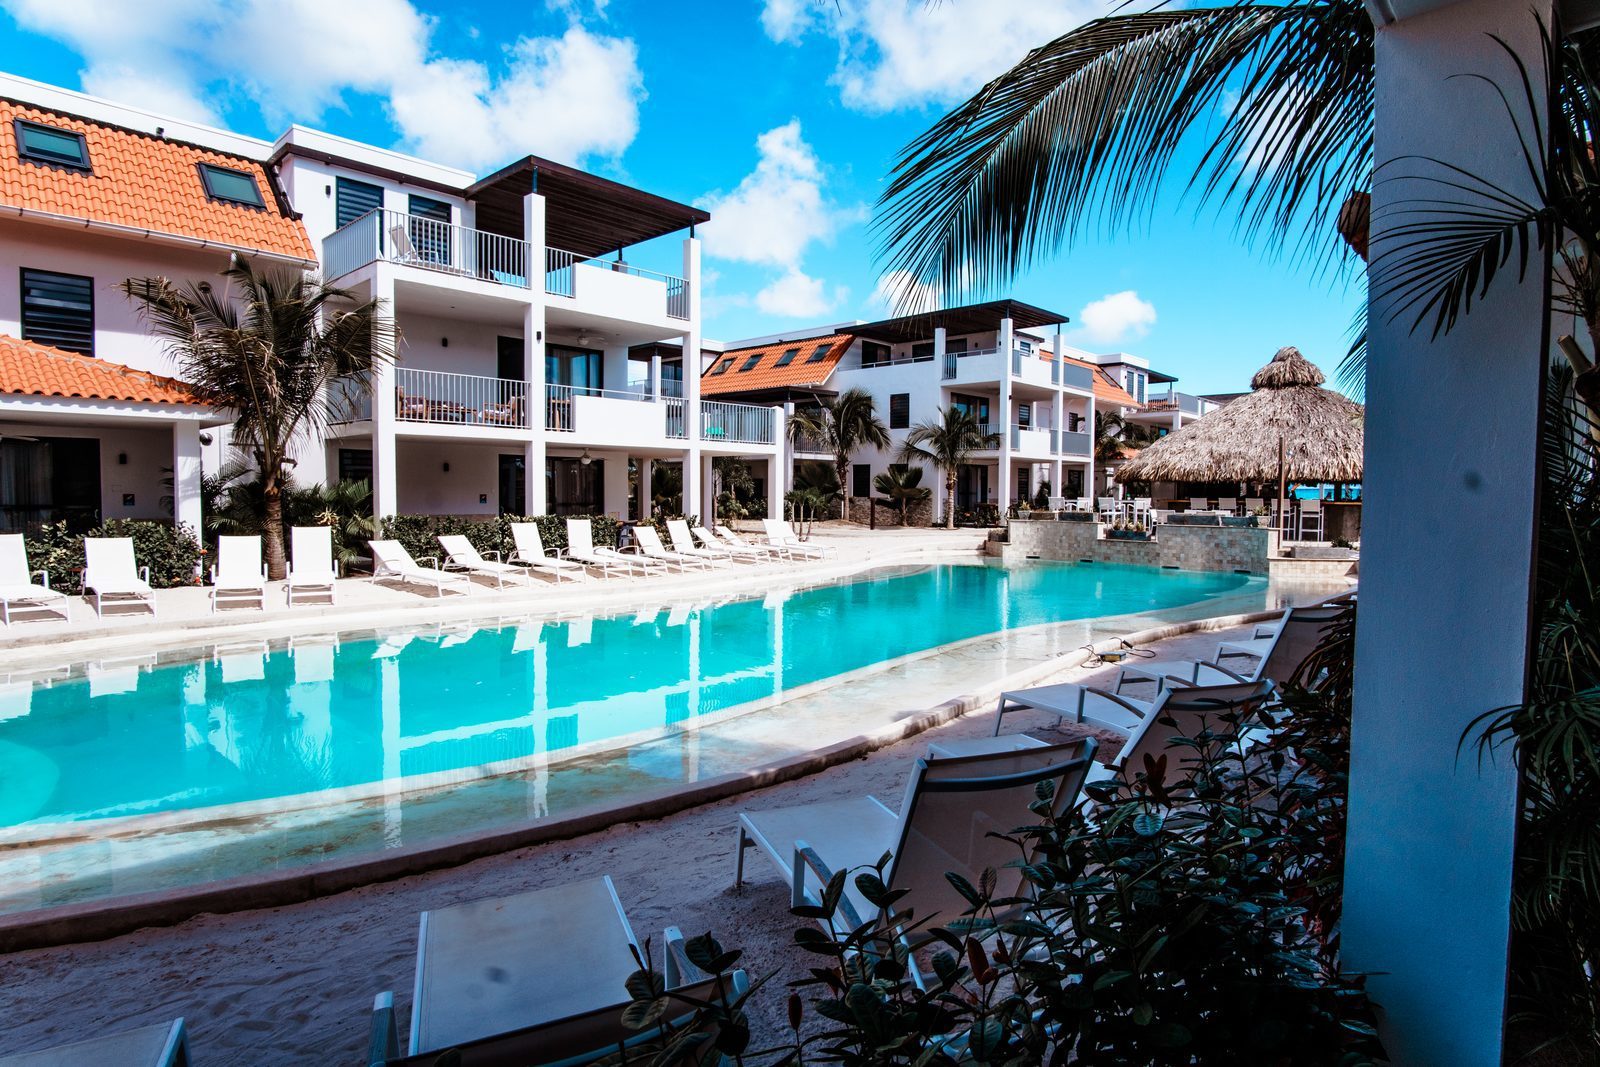 Das Resort Bonaire ist einer der wunderschönen Ferienorte auf Bonaire. Das Resort bietet unter anderem einen hübschen Swimmingpool.